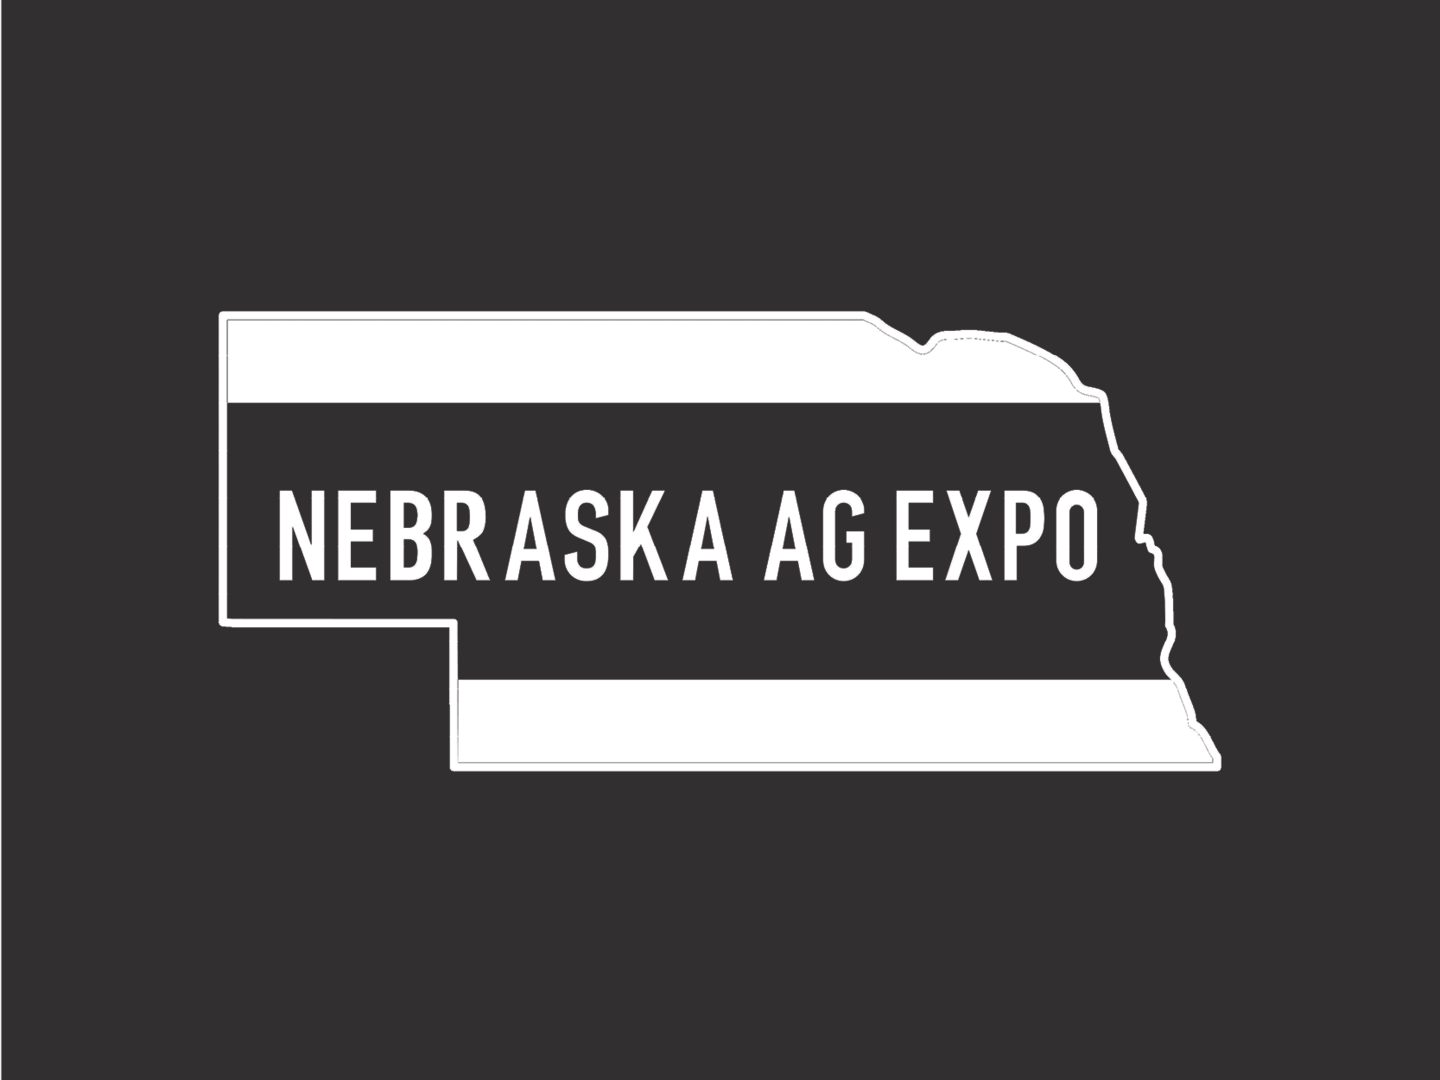 Nebraska Ag Expo White Logo on Black Background